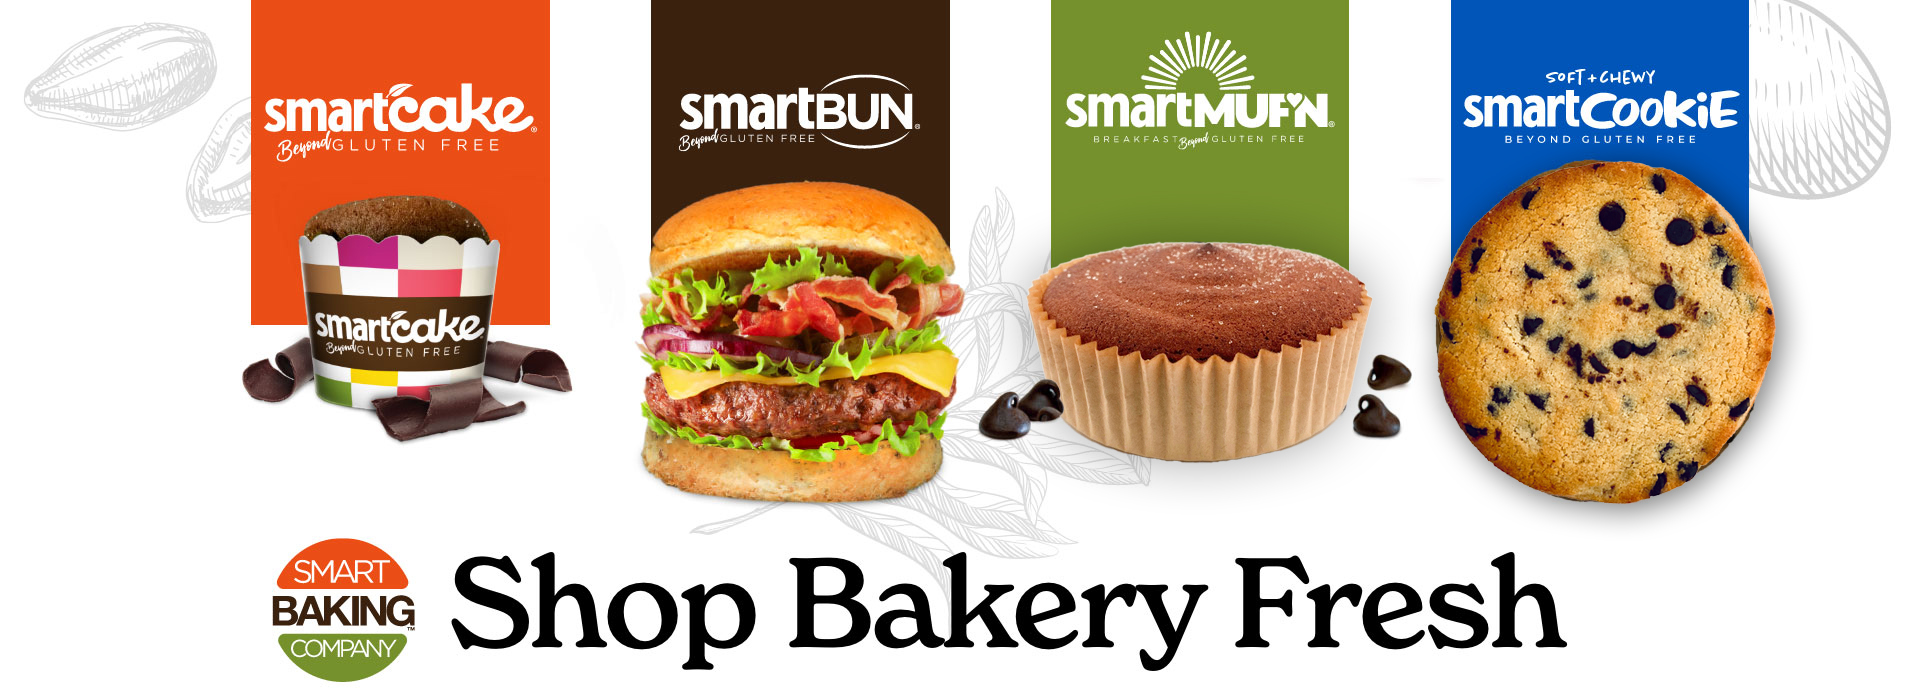 SHOP - Smart Baking Company